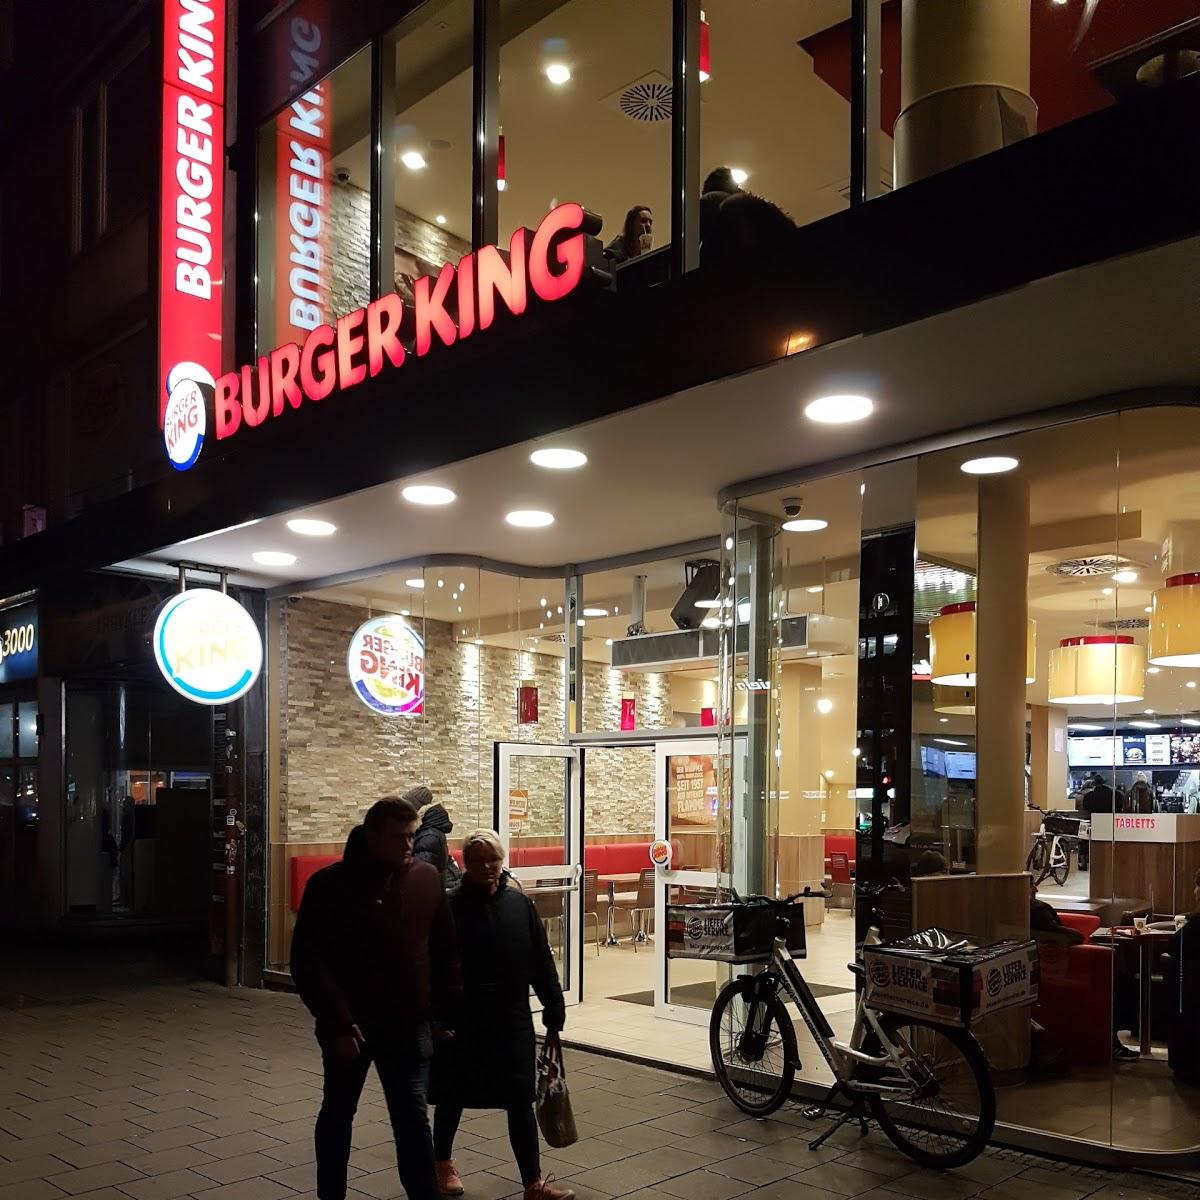 Restaurant "Burger King" in  München